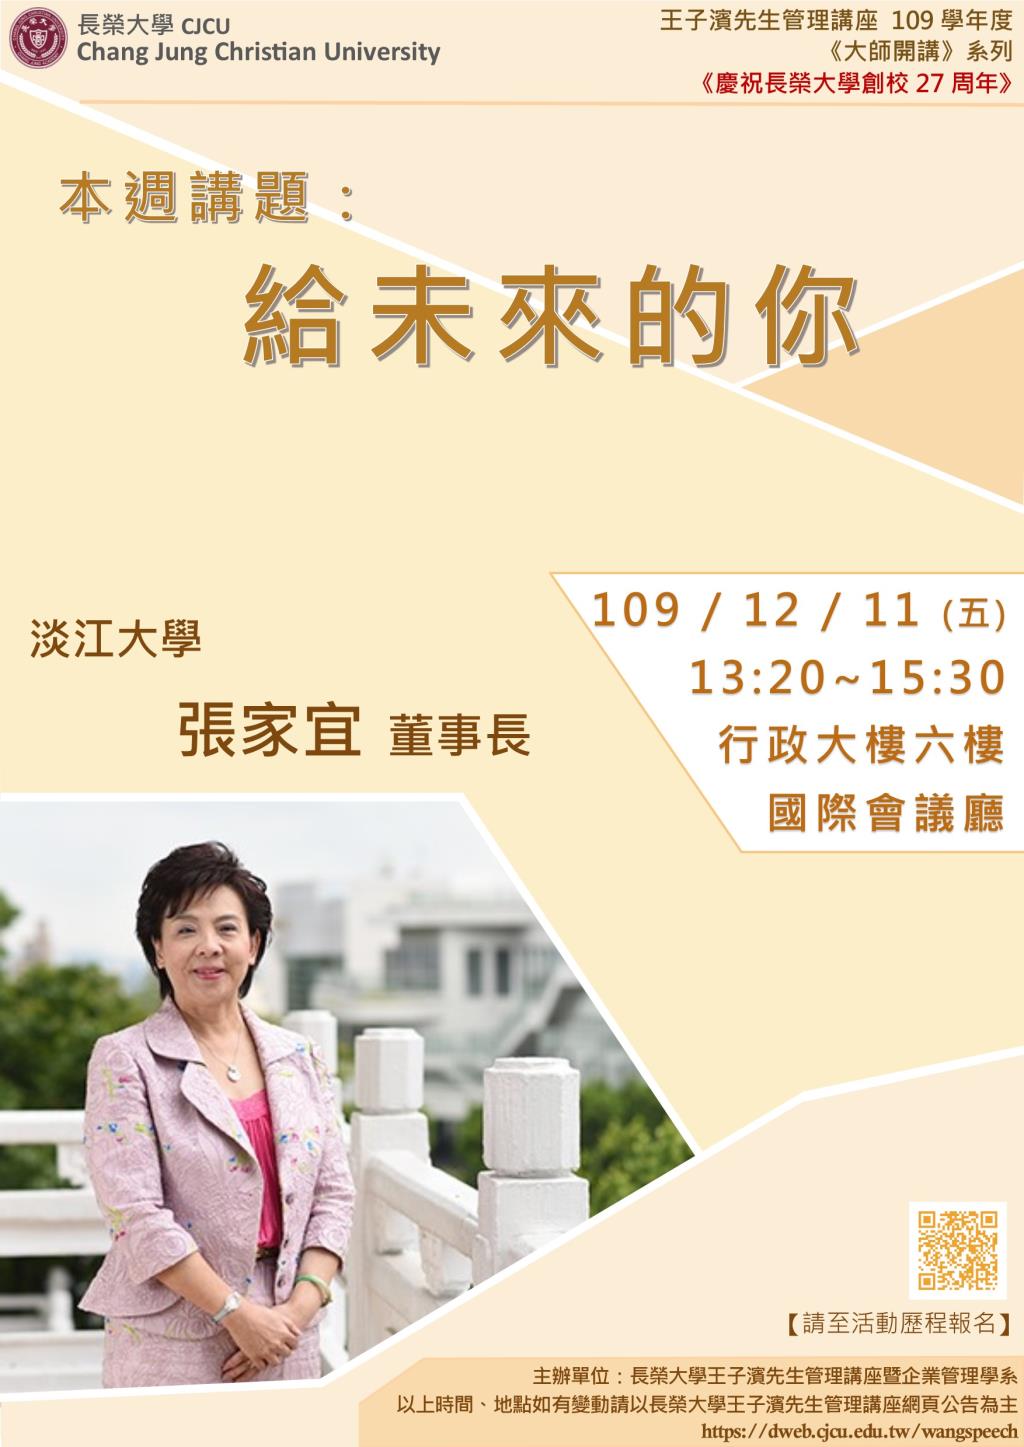 敬邀參加本週五下午(12/11)王子濱先生管理講座--給未來的你 淡江大學 張家宜董事長